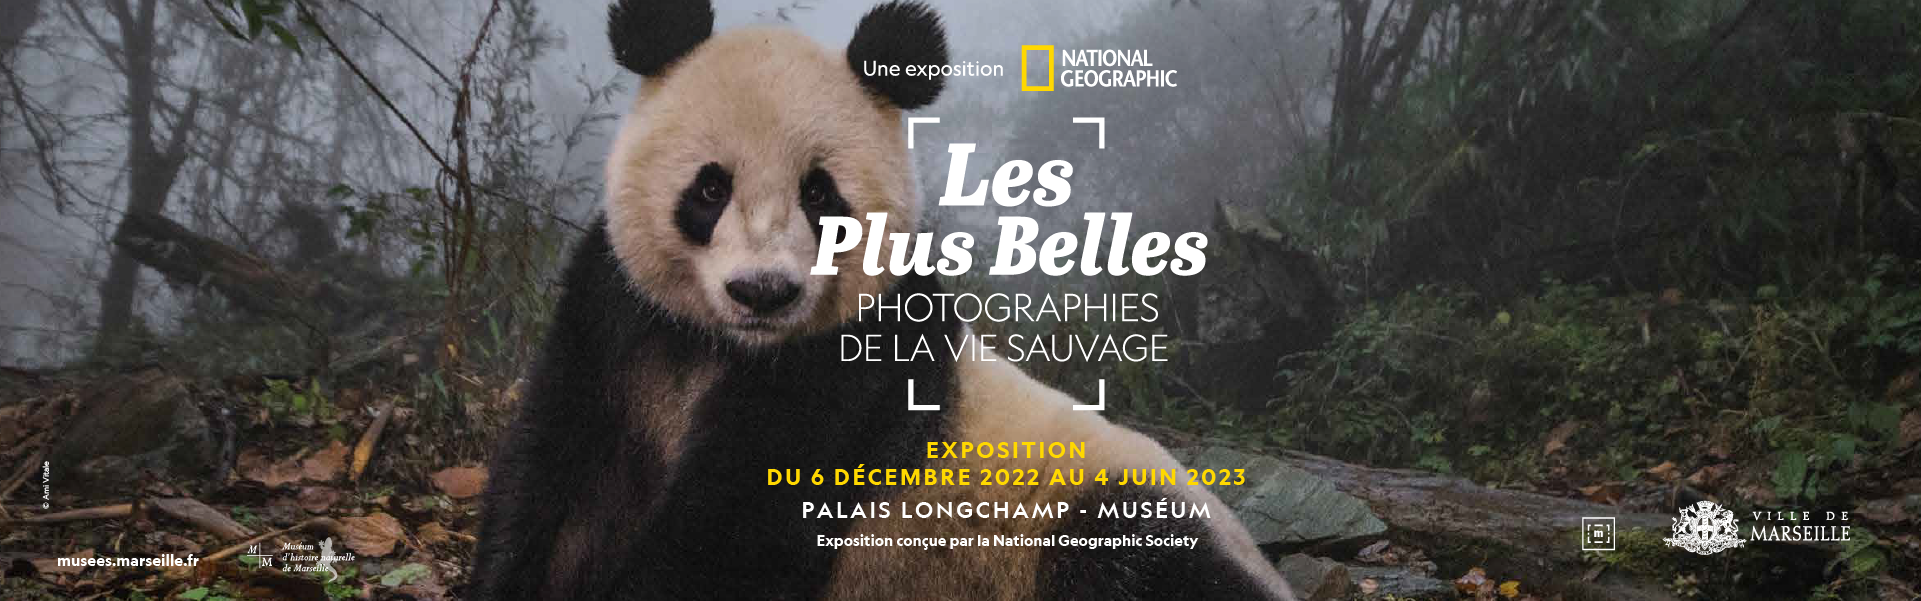 Les meilleures photographies de la vie sauvage de la National Geographic